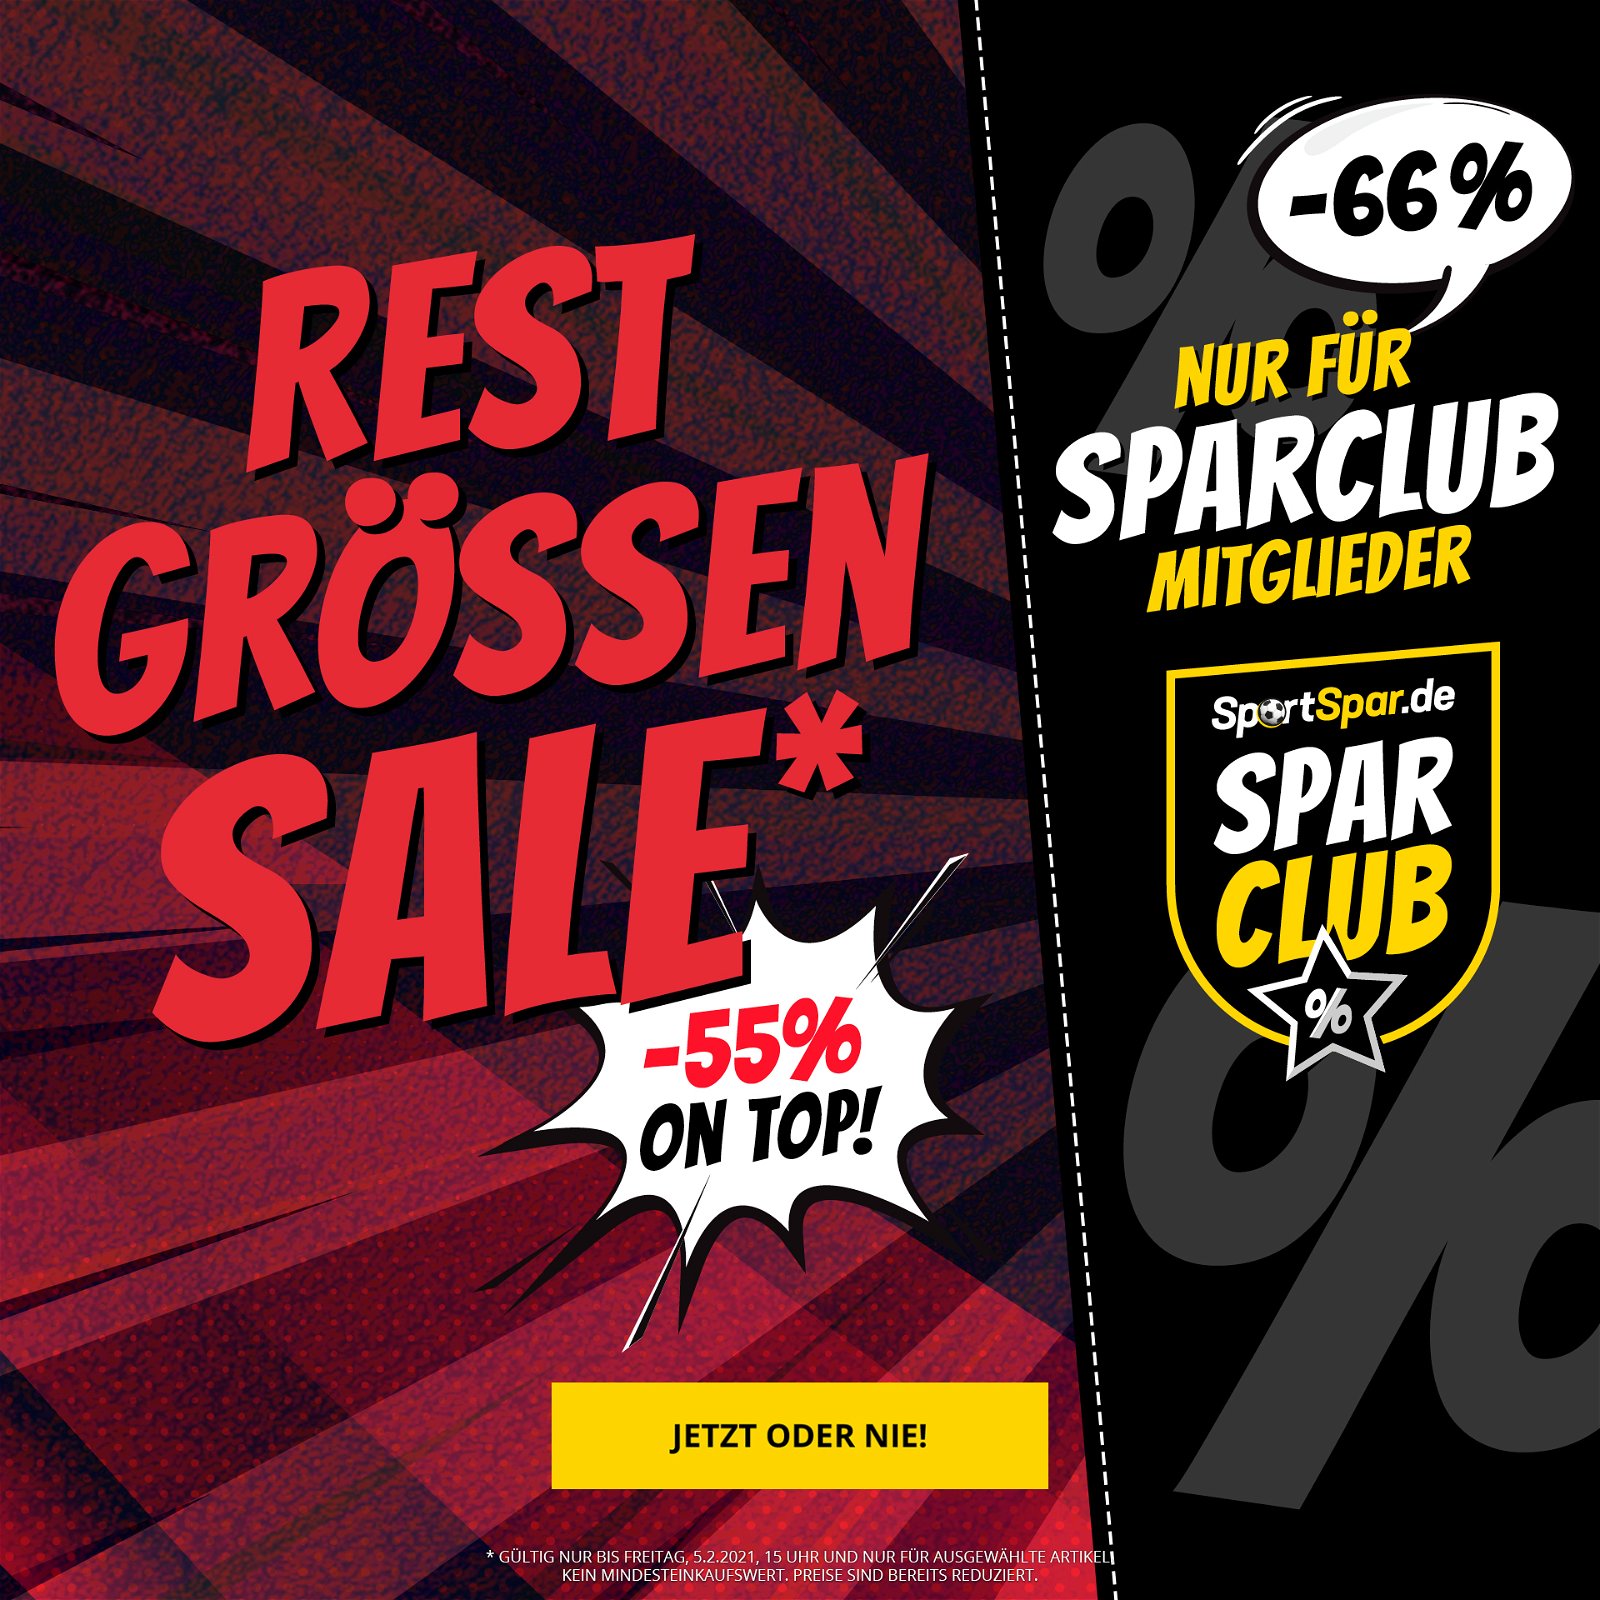 SportSpar: ☆ Restgrößen-Sale! ☆ -55 % on Top auf ausgewählte Artikel! ☆